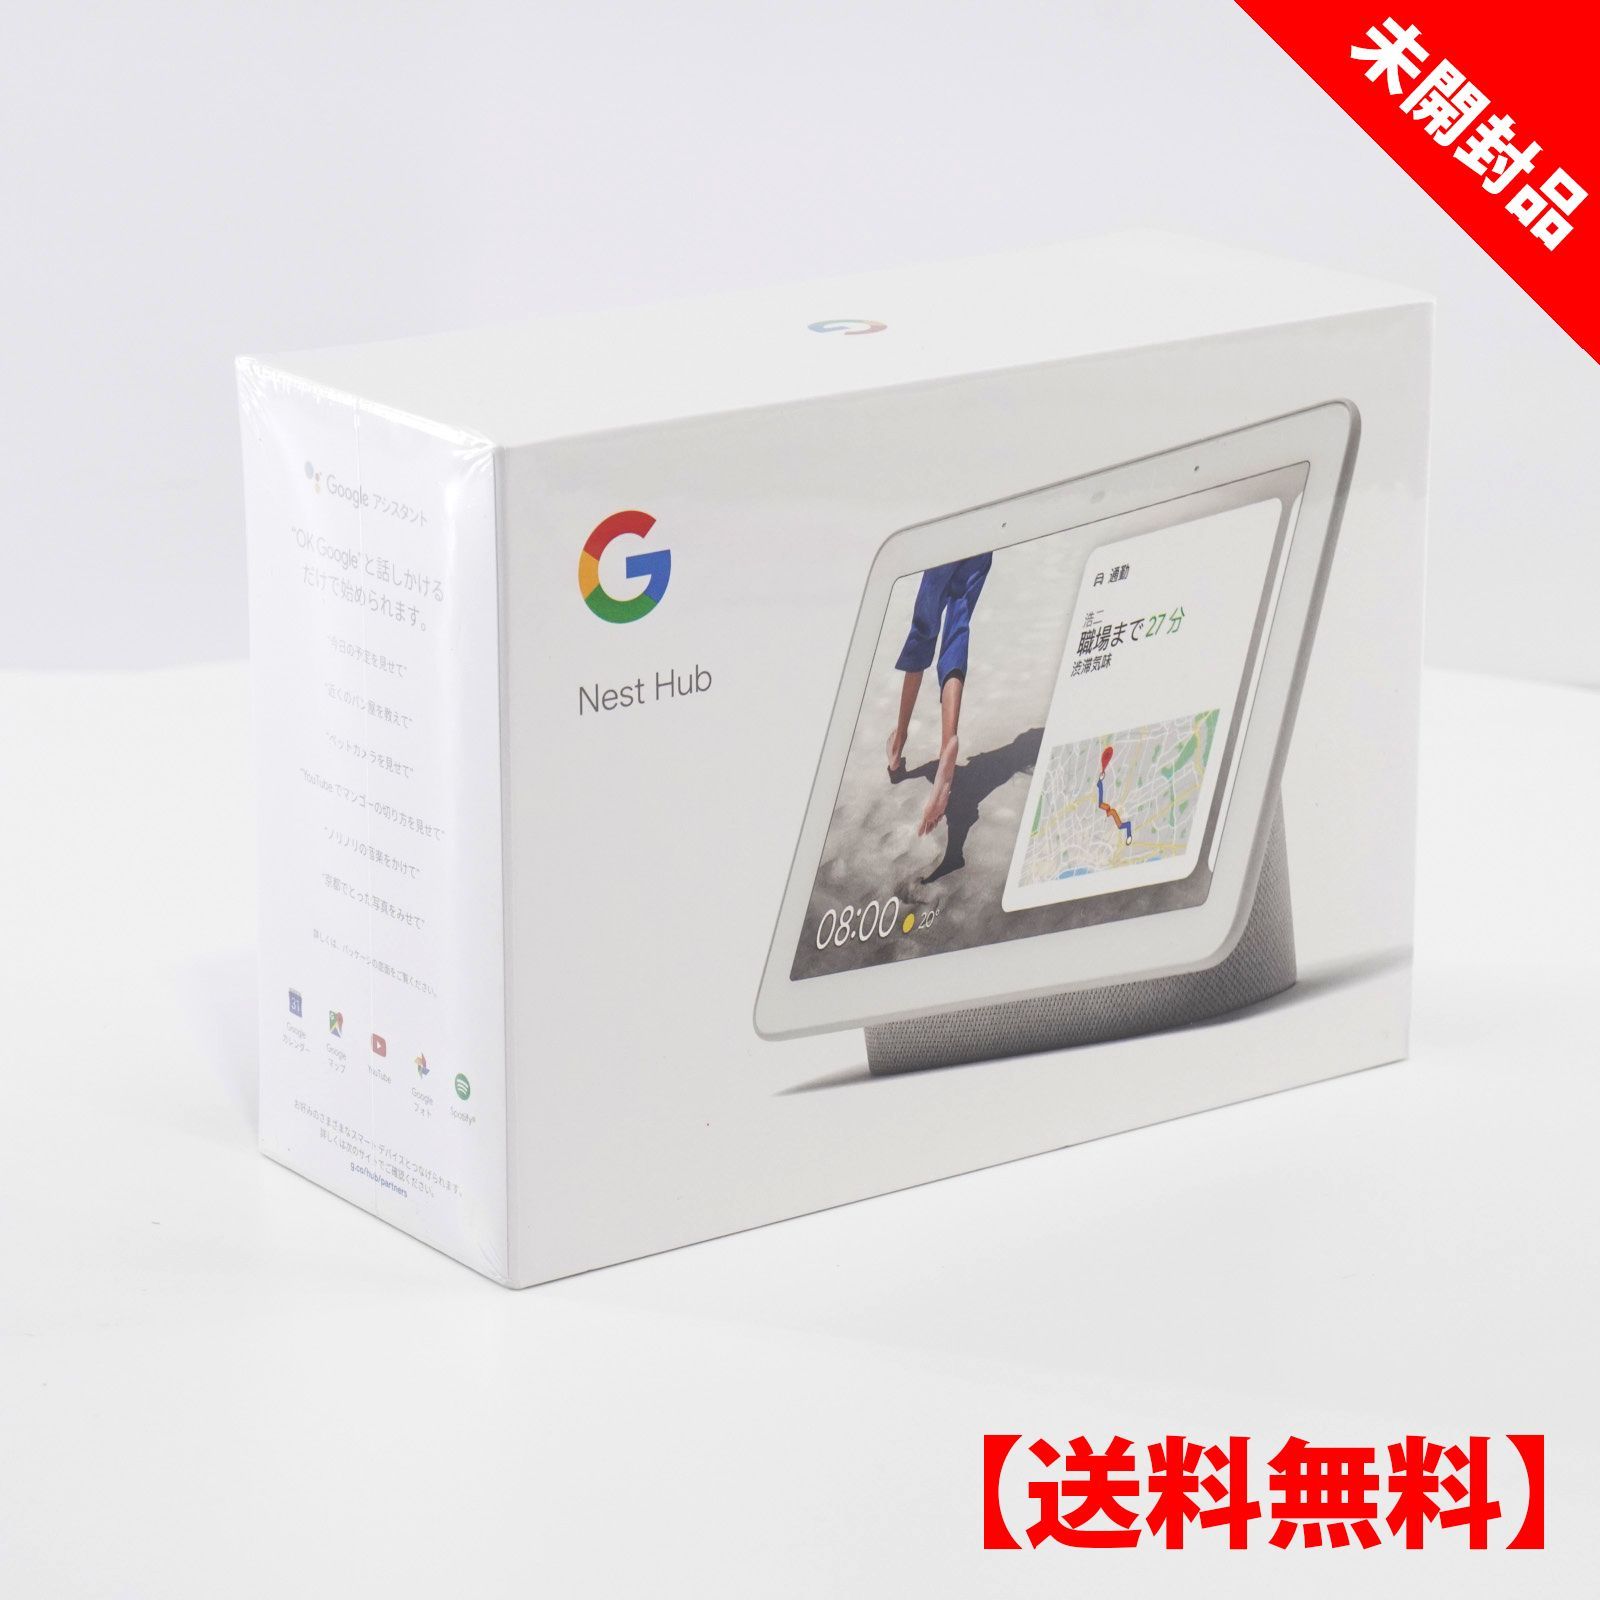 【新品】Google Nest Hub GA00516-JP チョーク